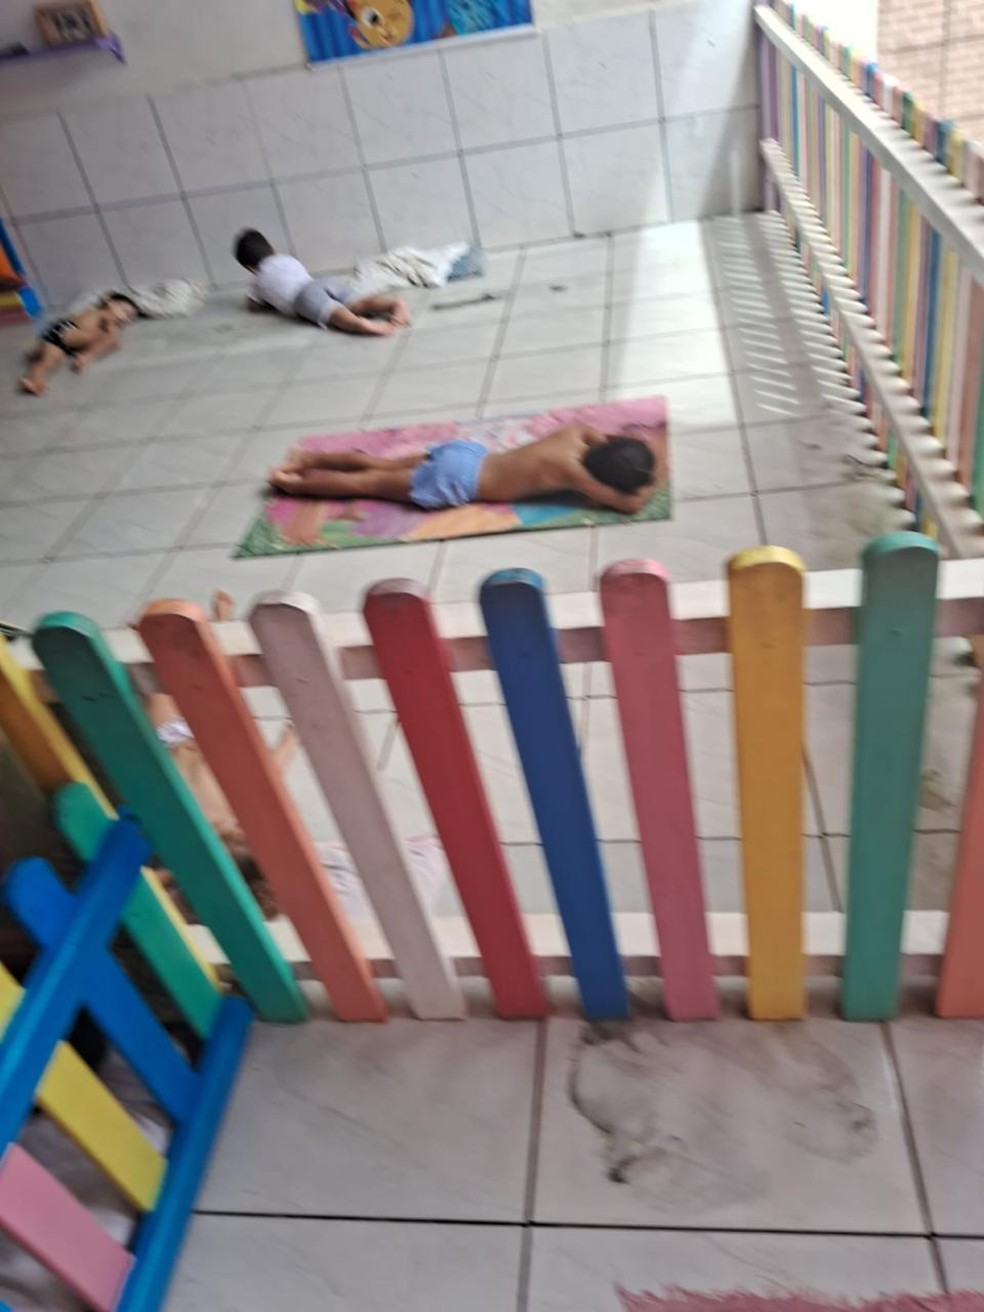 Registros de servidores mostram crianças dormindo no chão em creche — Foto: Arquivo pessoal